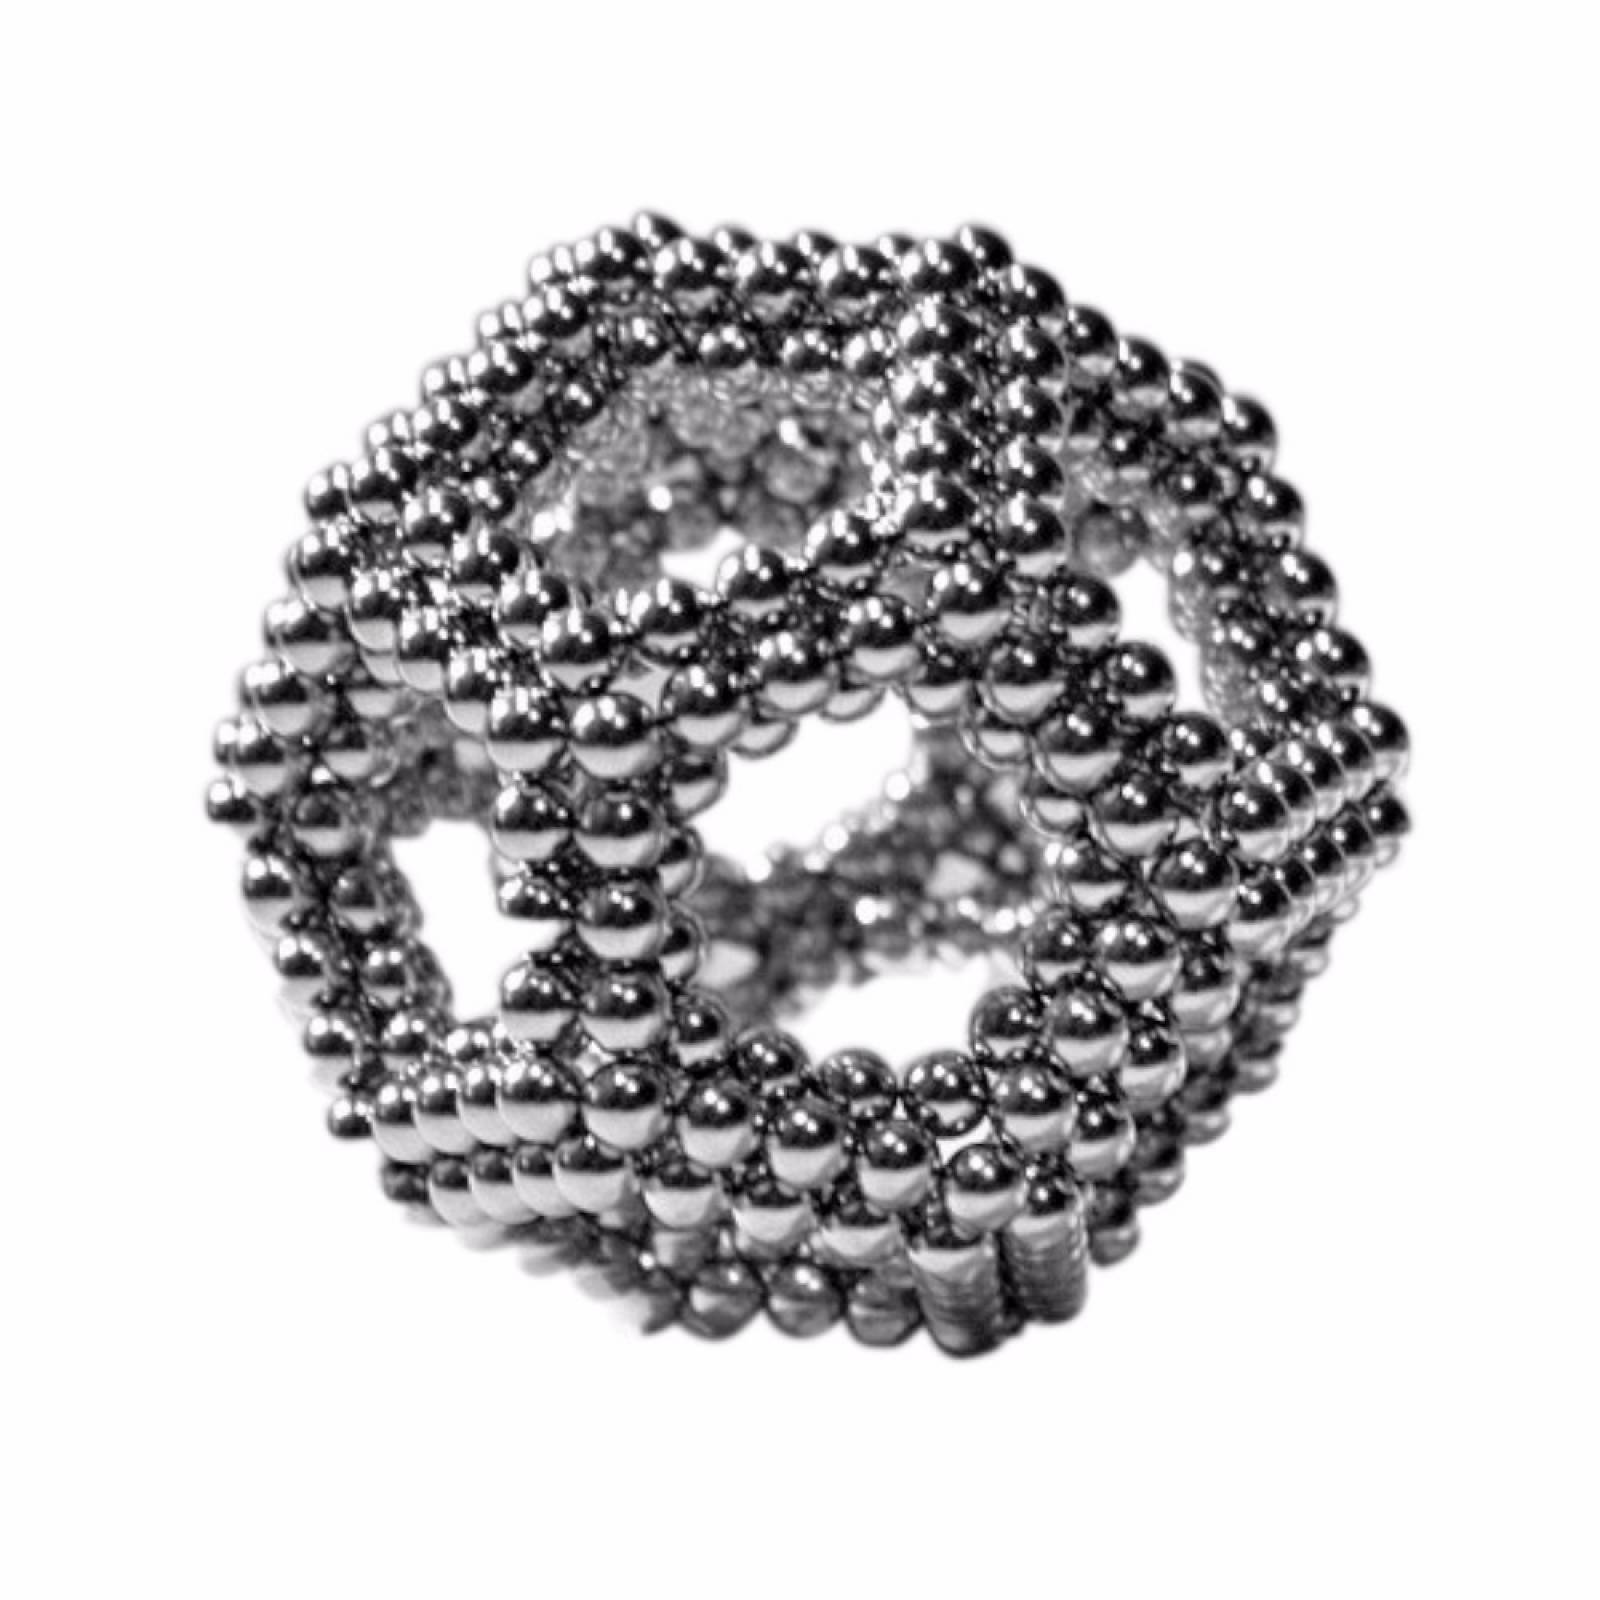 Neocube 5mm Juego De 216 Esferas Cubo De Neodimio Figuras